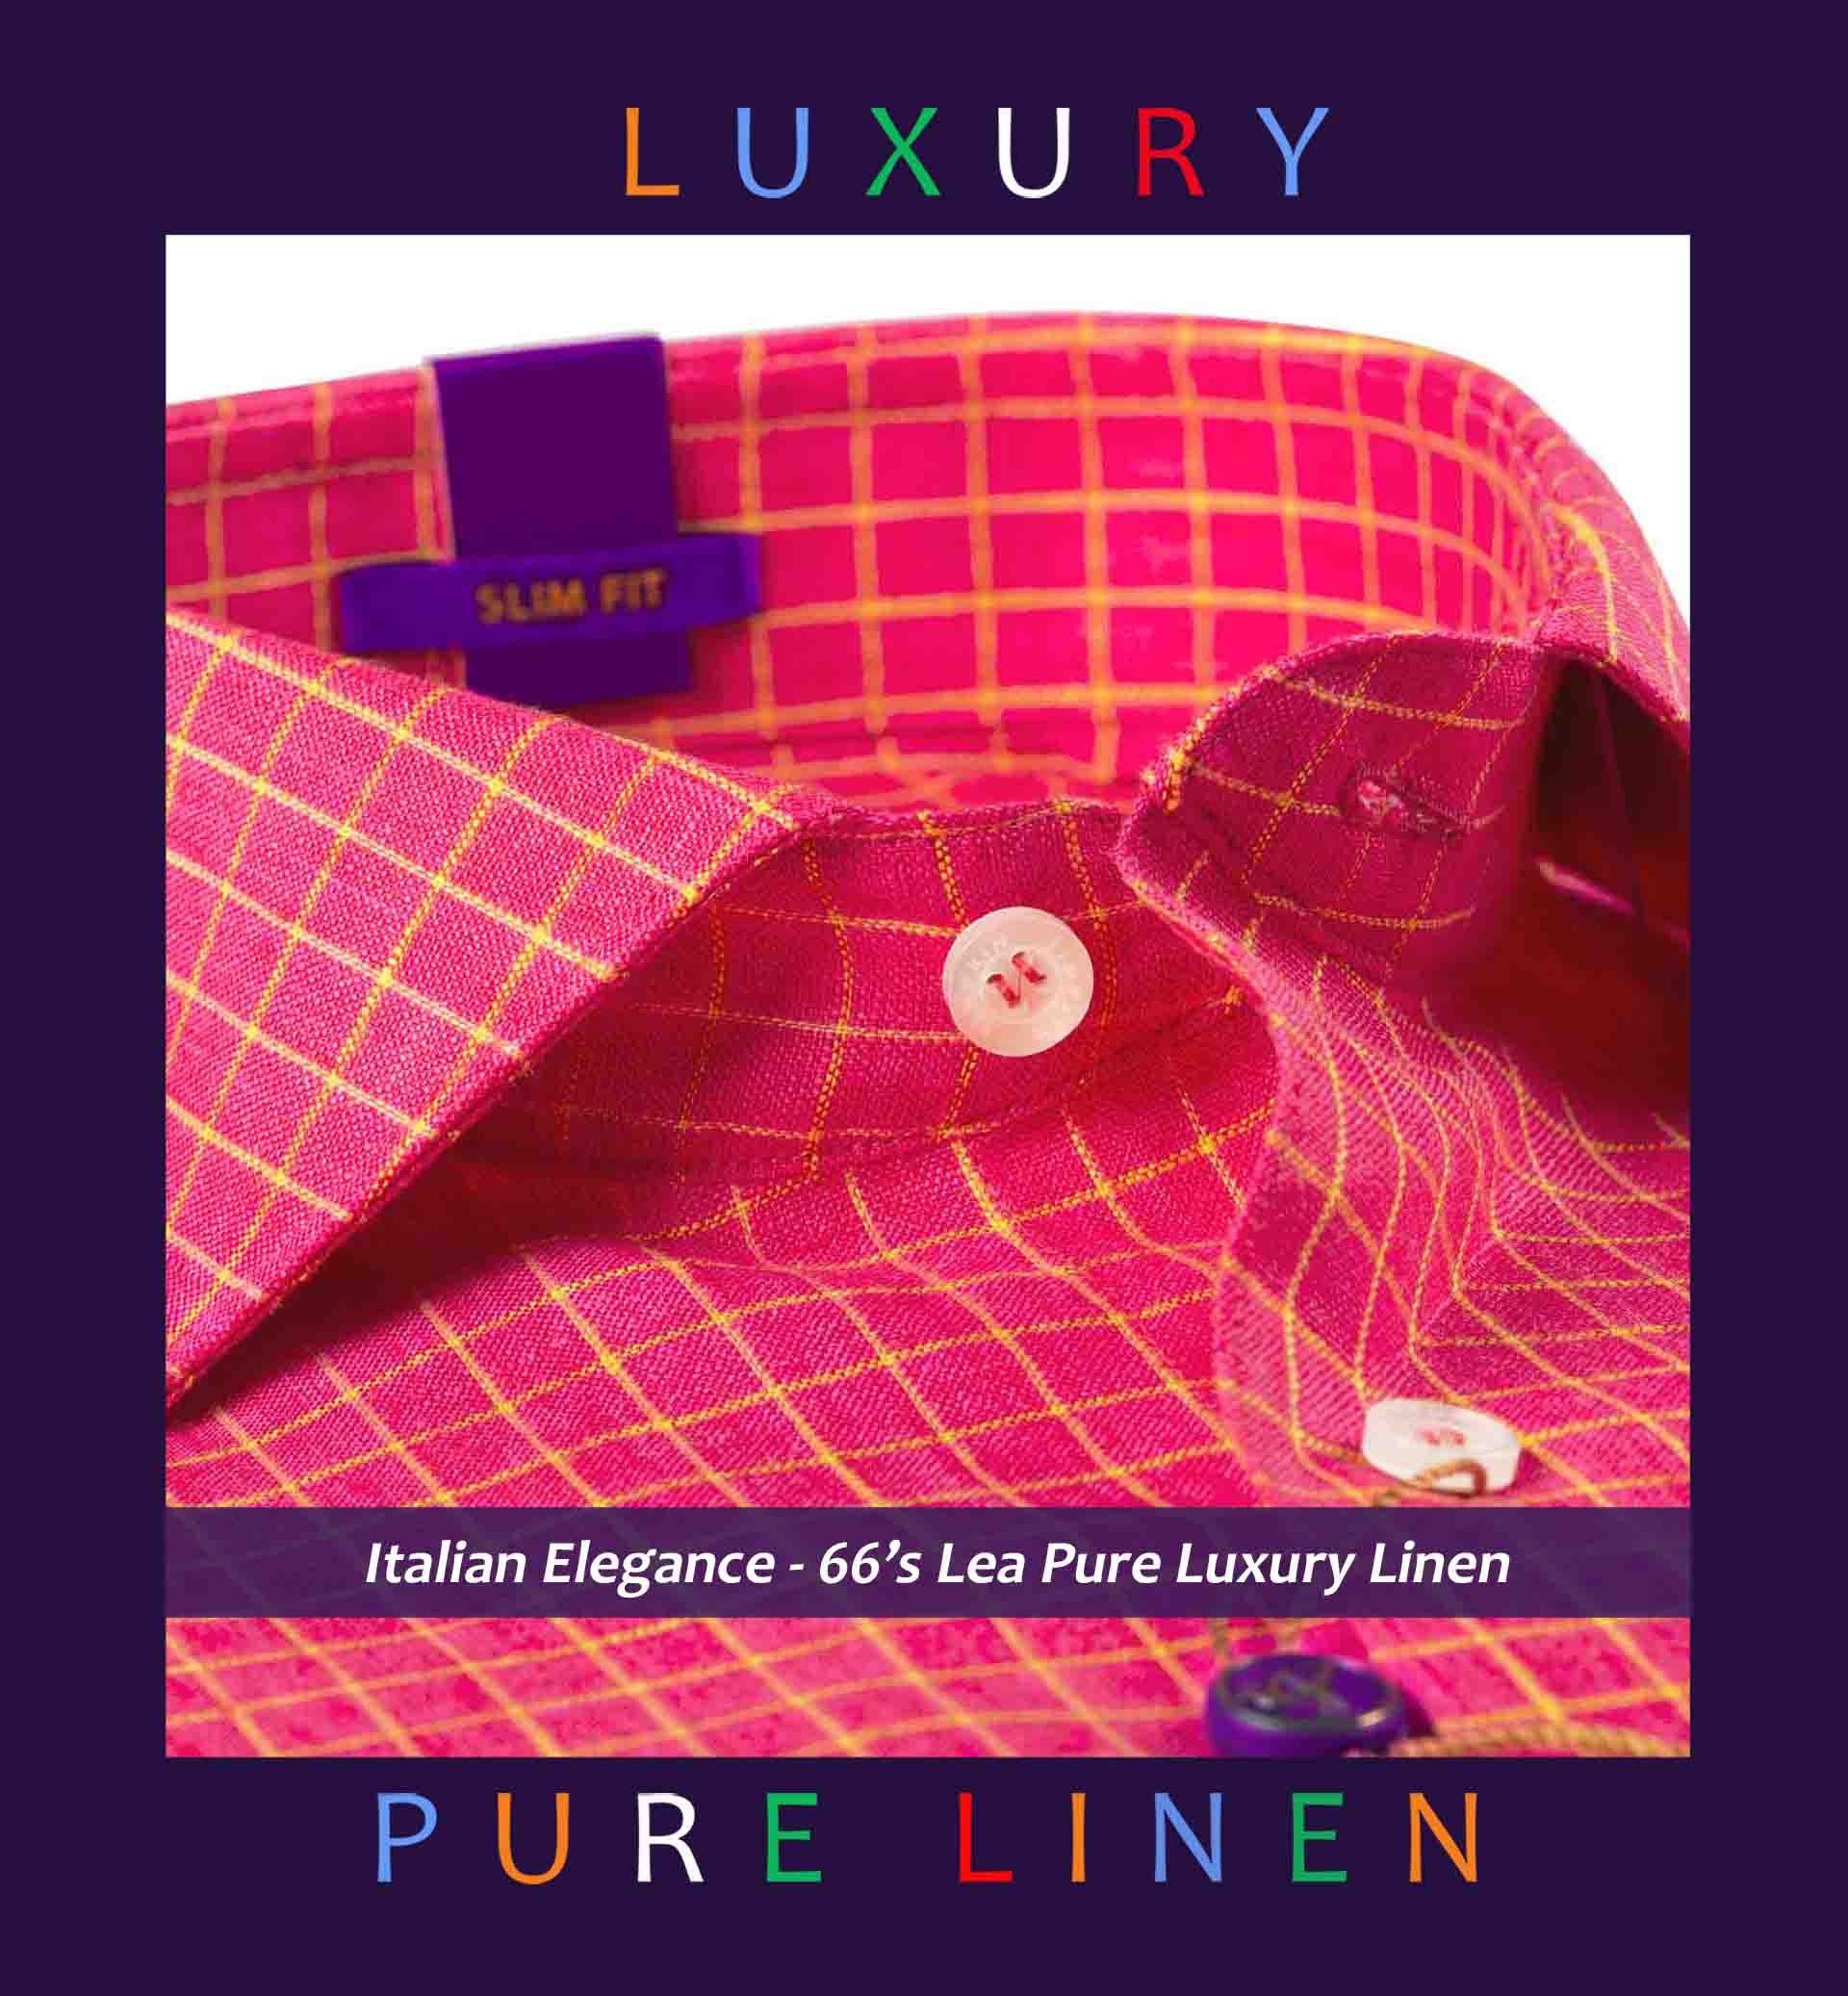 Obispo- Coral Red & Yellow Check- 66's Lea Pure Luxury Linen